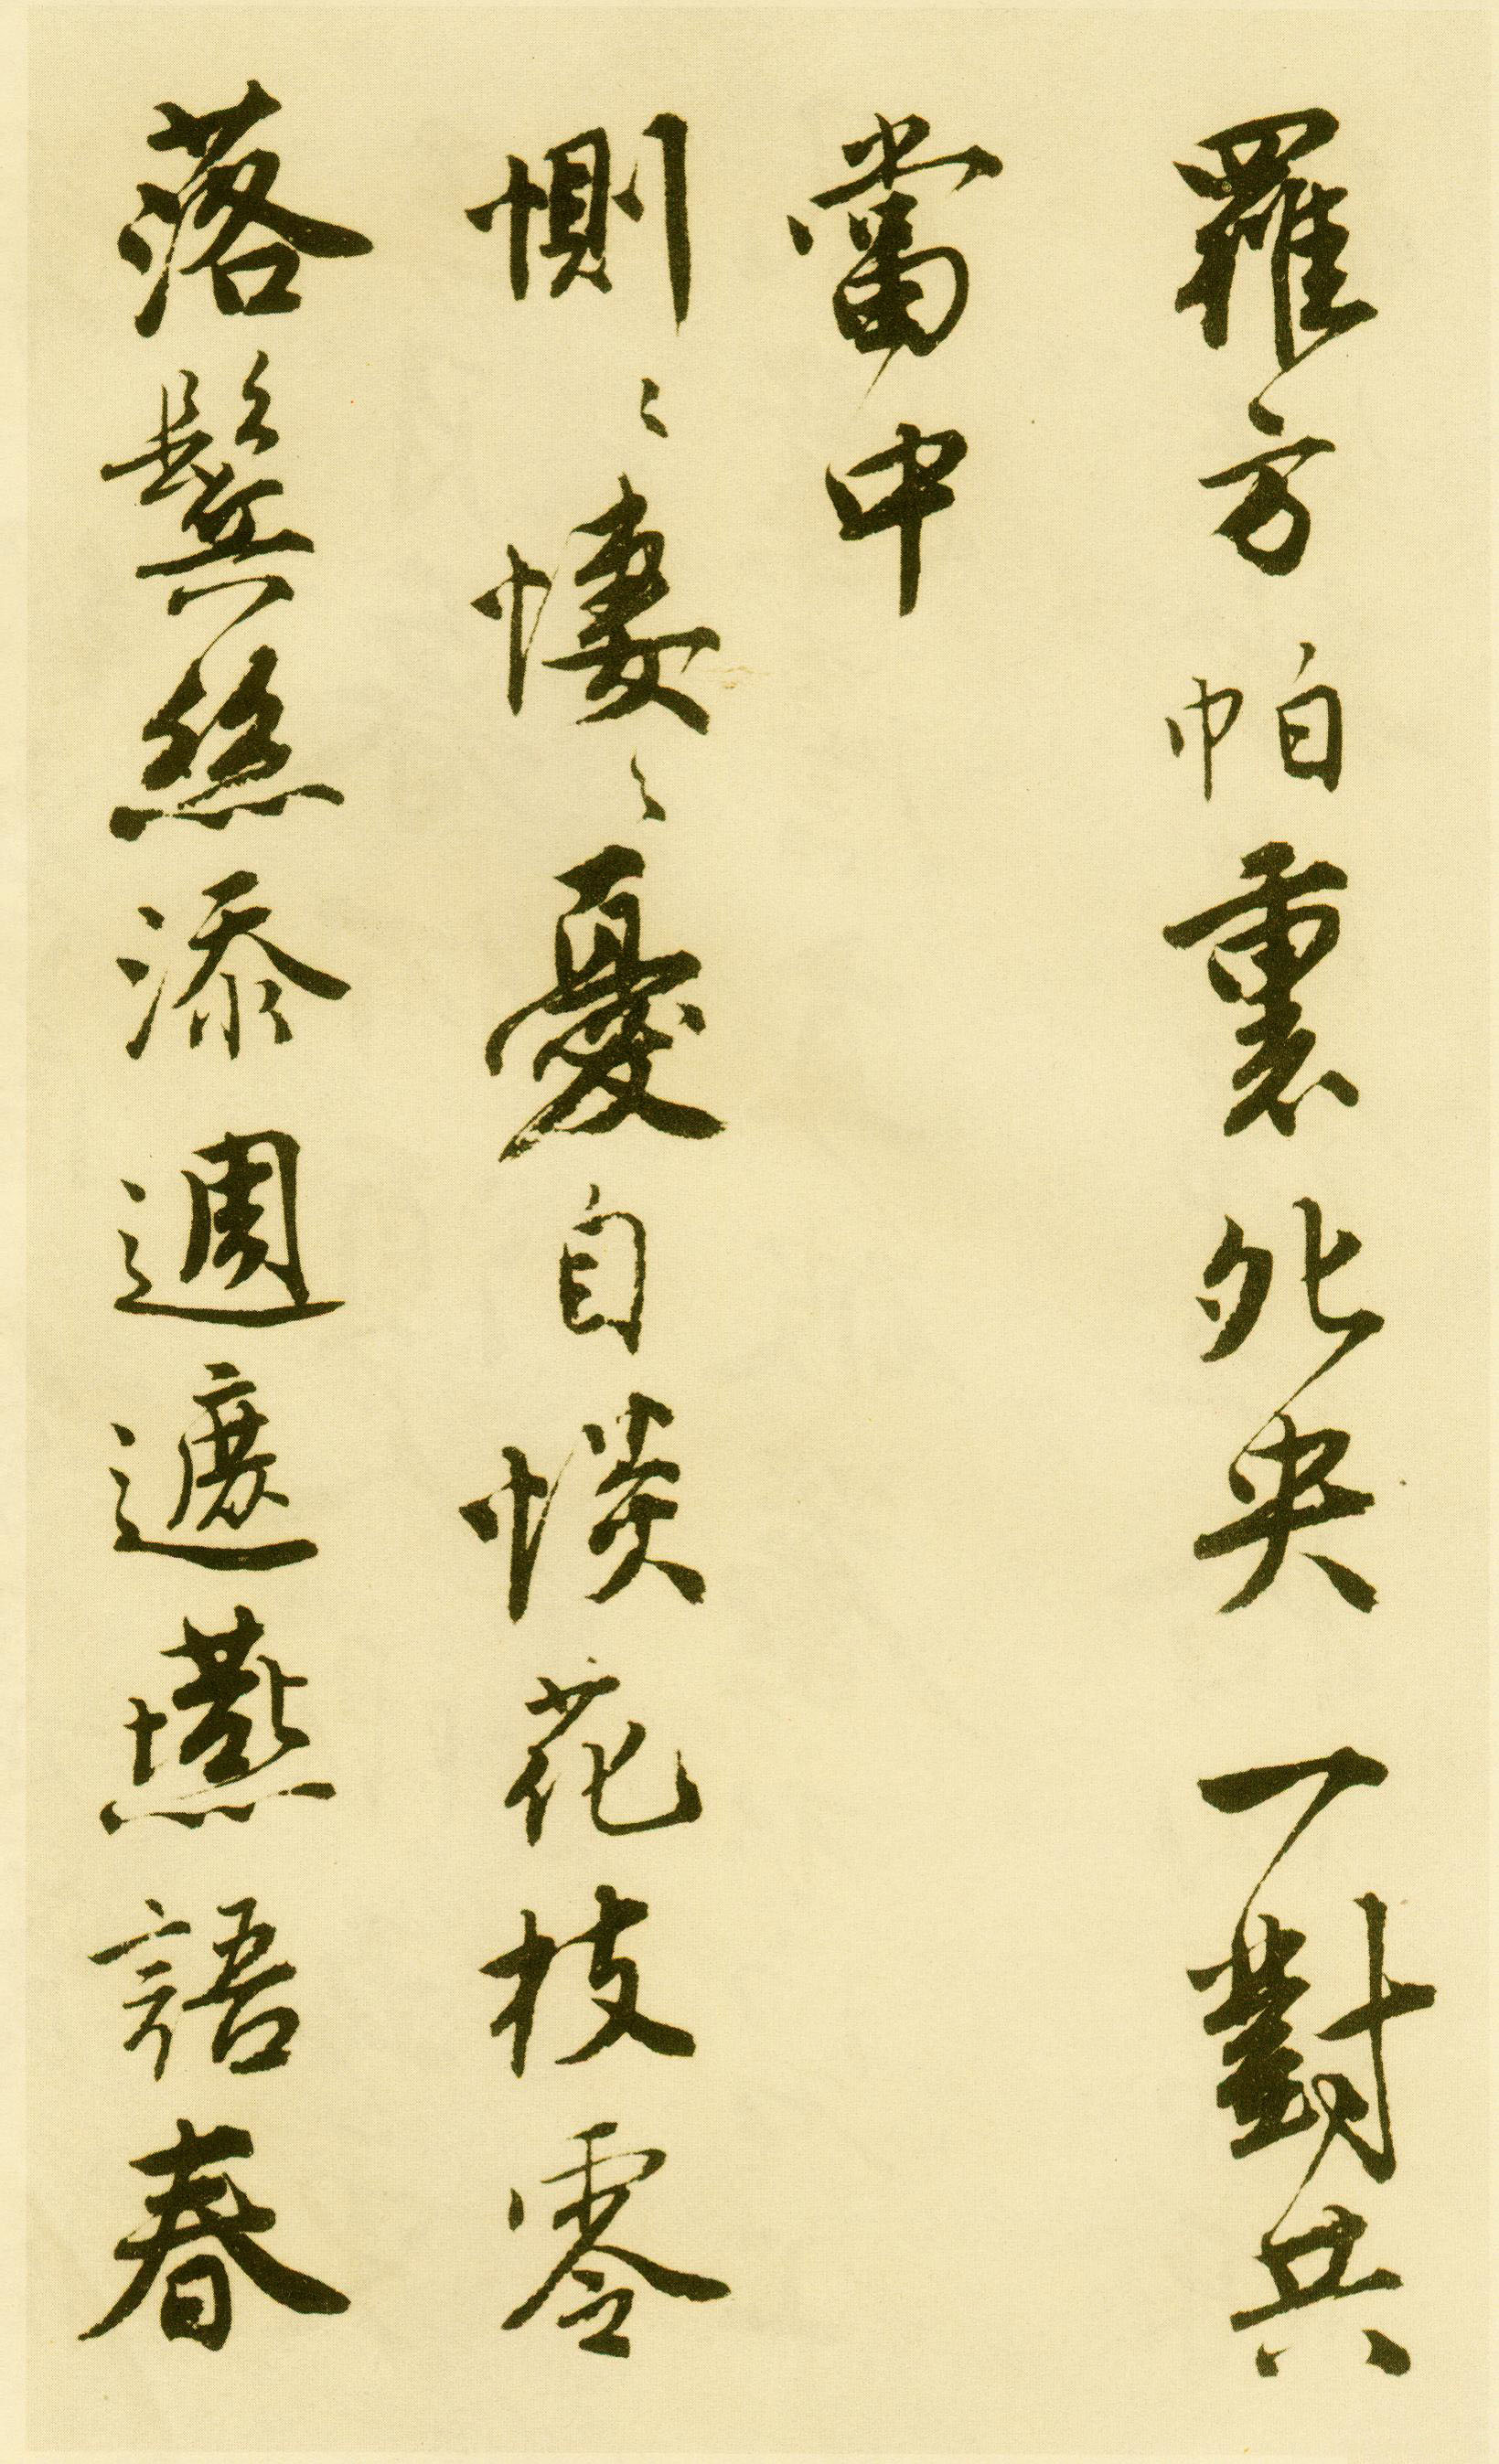 唐寅行书《落花诗册》(一)-苏州市博物馆藏(图18)